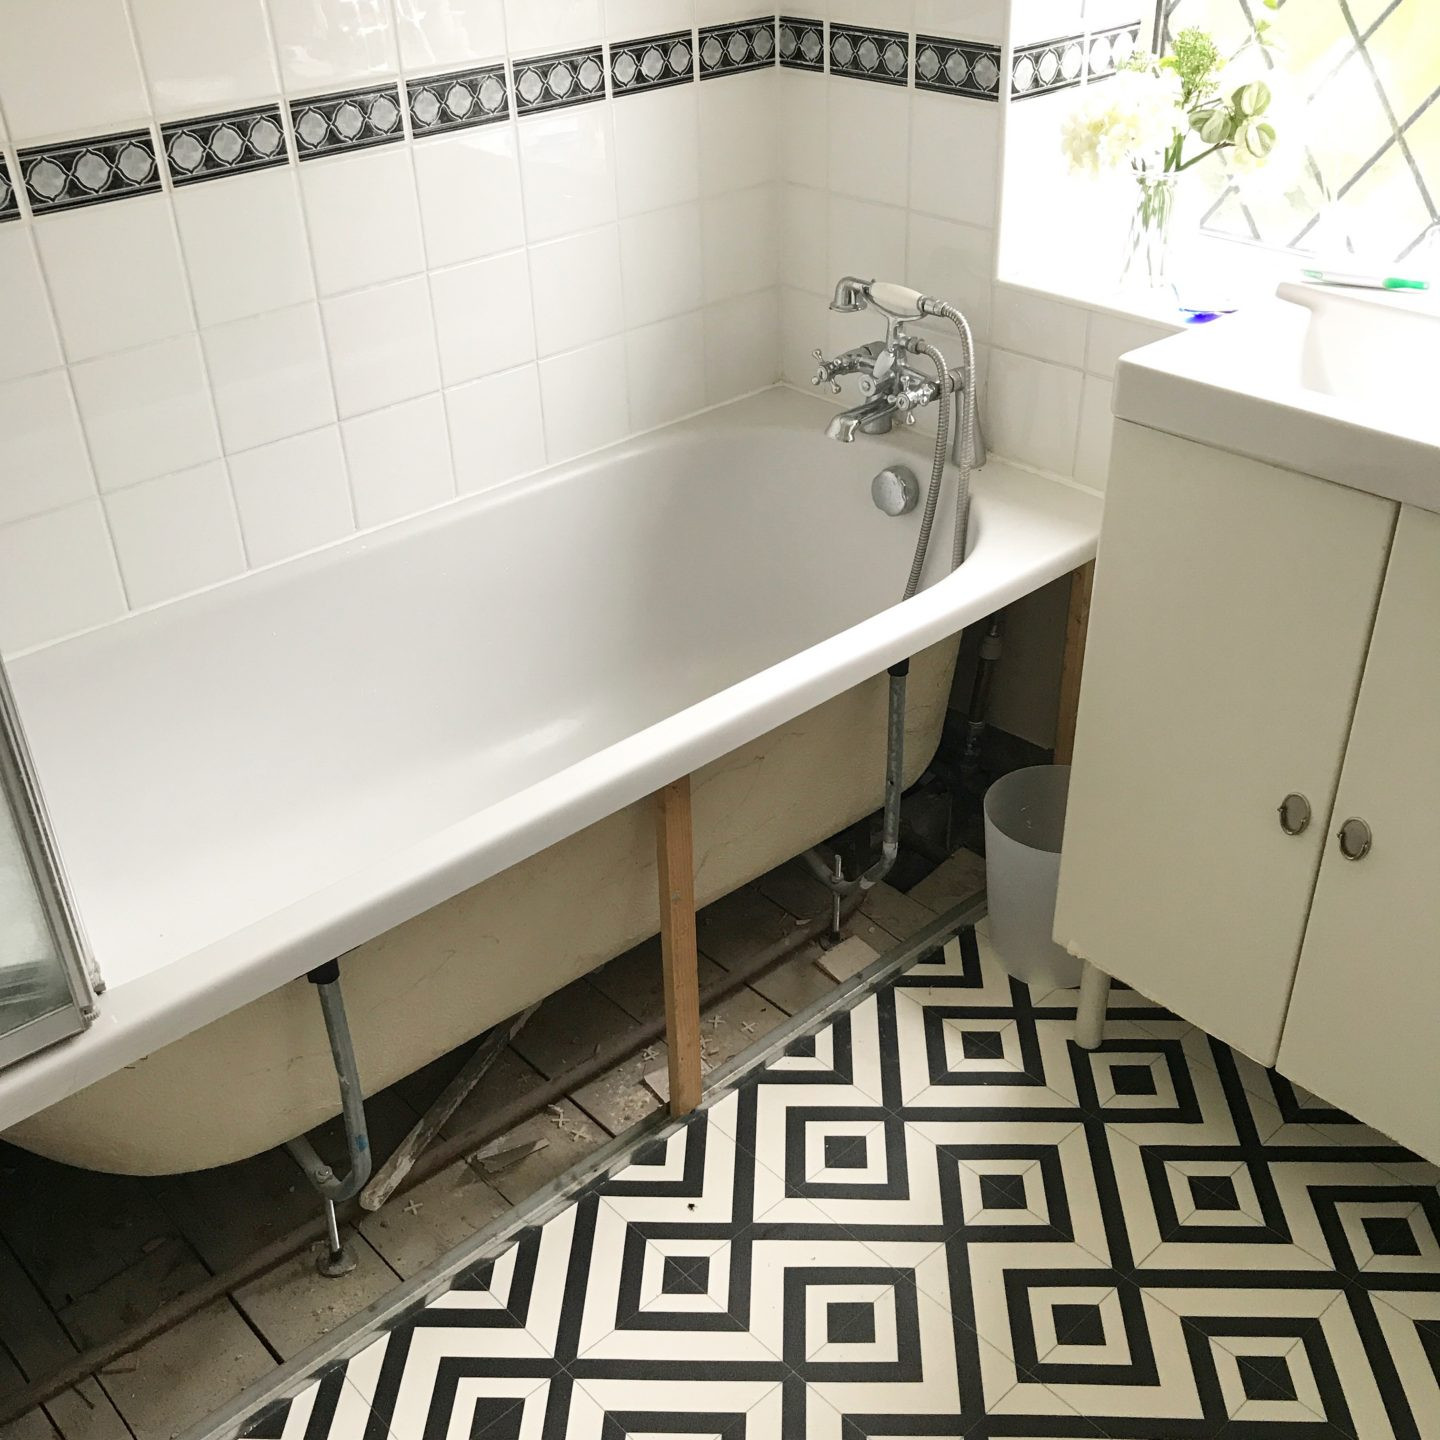 Painting Ceramic Tile In Bathroom
 DIY Tips Painting Ceramic Tiles For A Bathroom Update